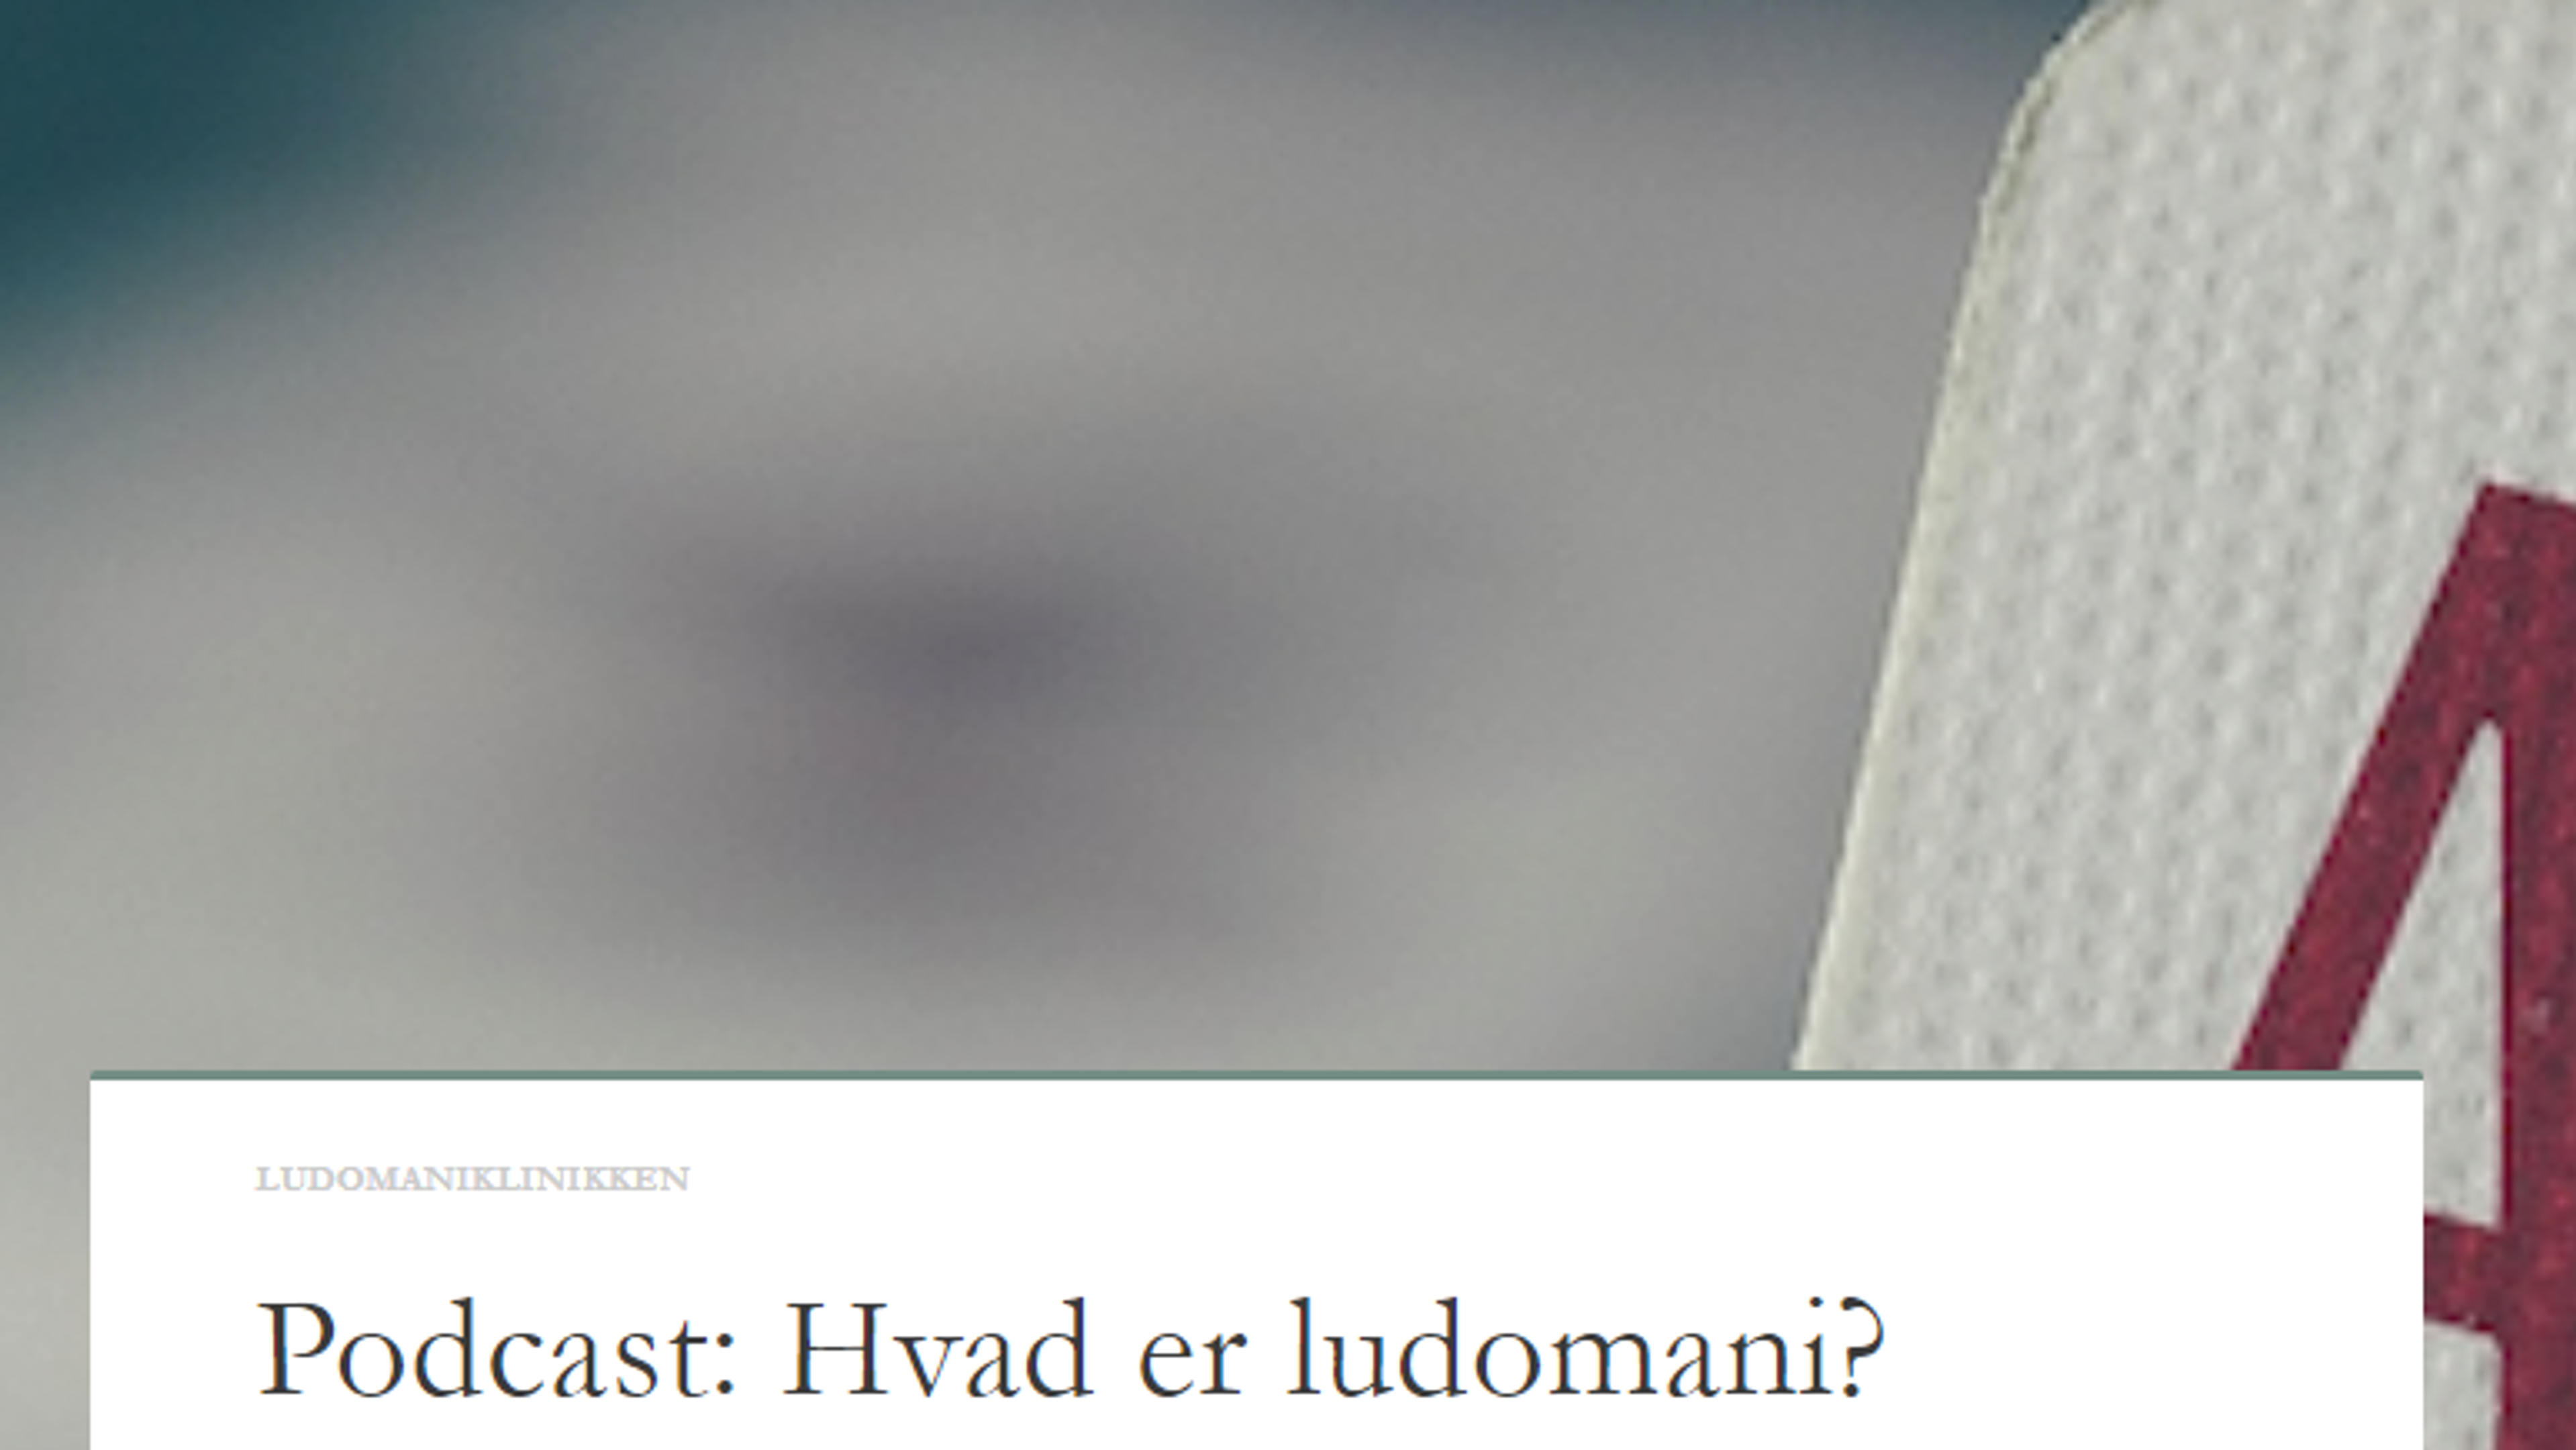 På billedet ses teksten 'Podcast: hvad er ludomani?'.